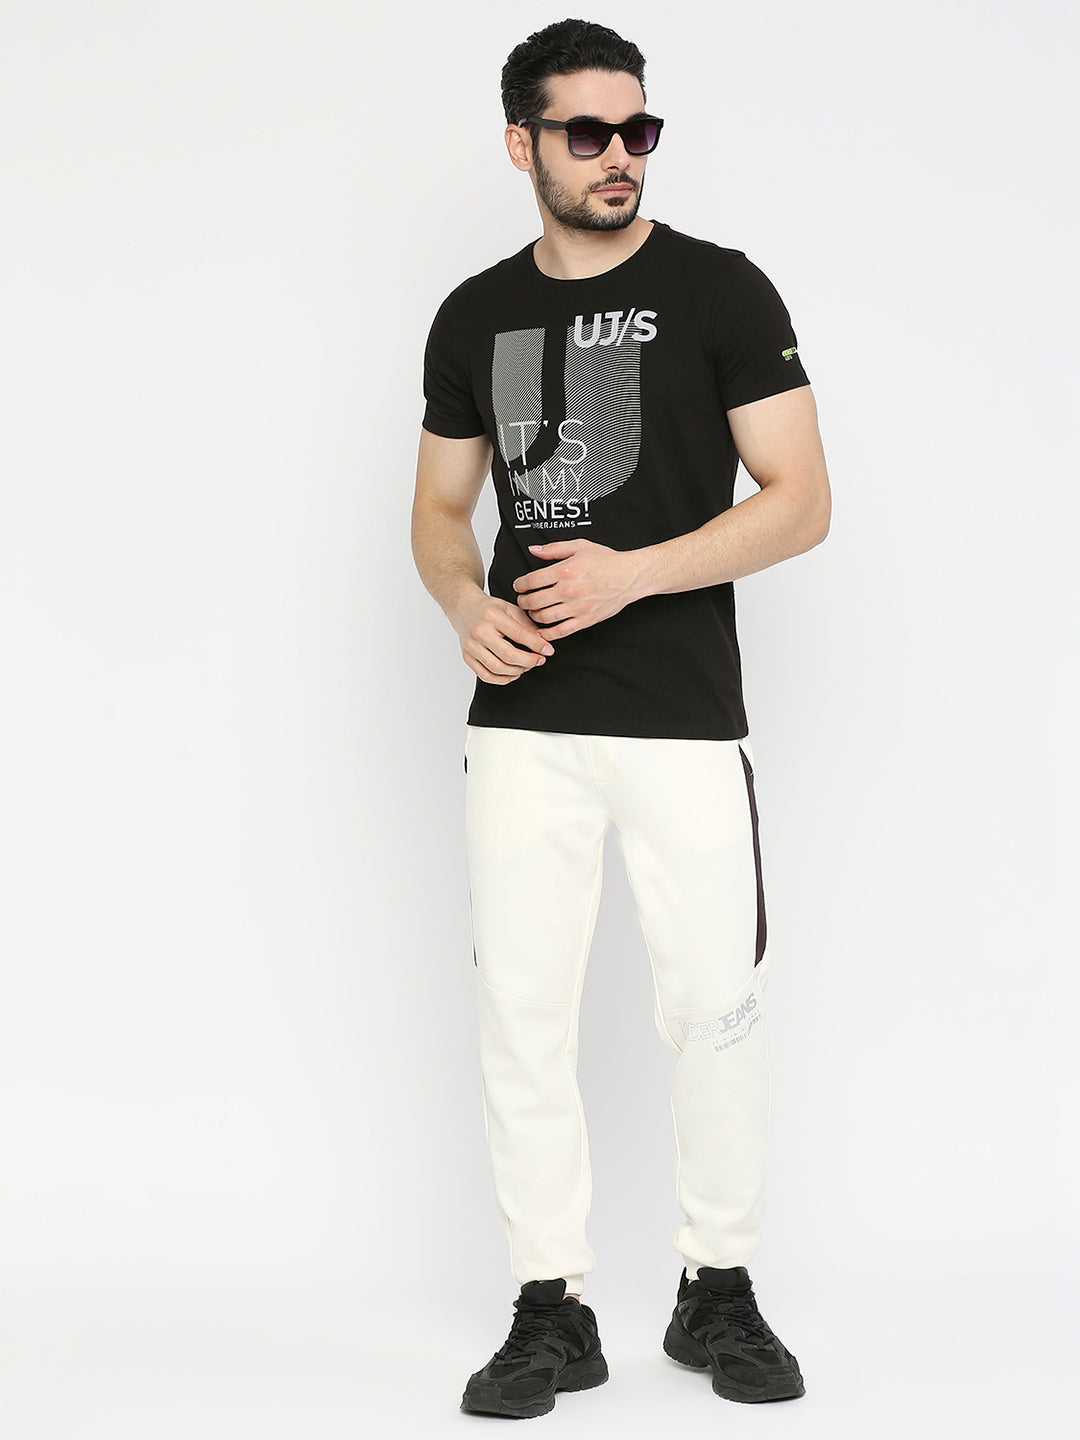 Men Premium Cotton Black Round Neck Tshirt- UnderJeans by Spykar